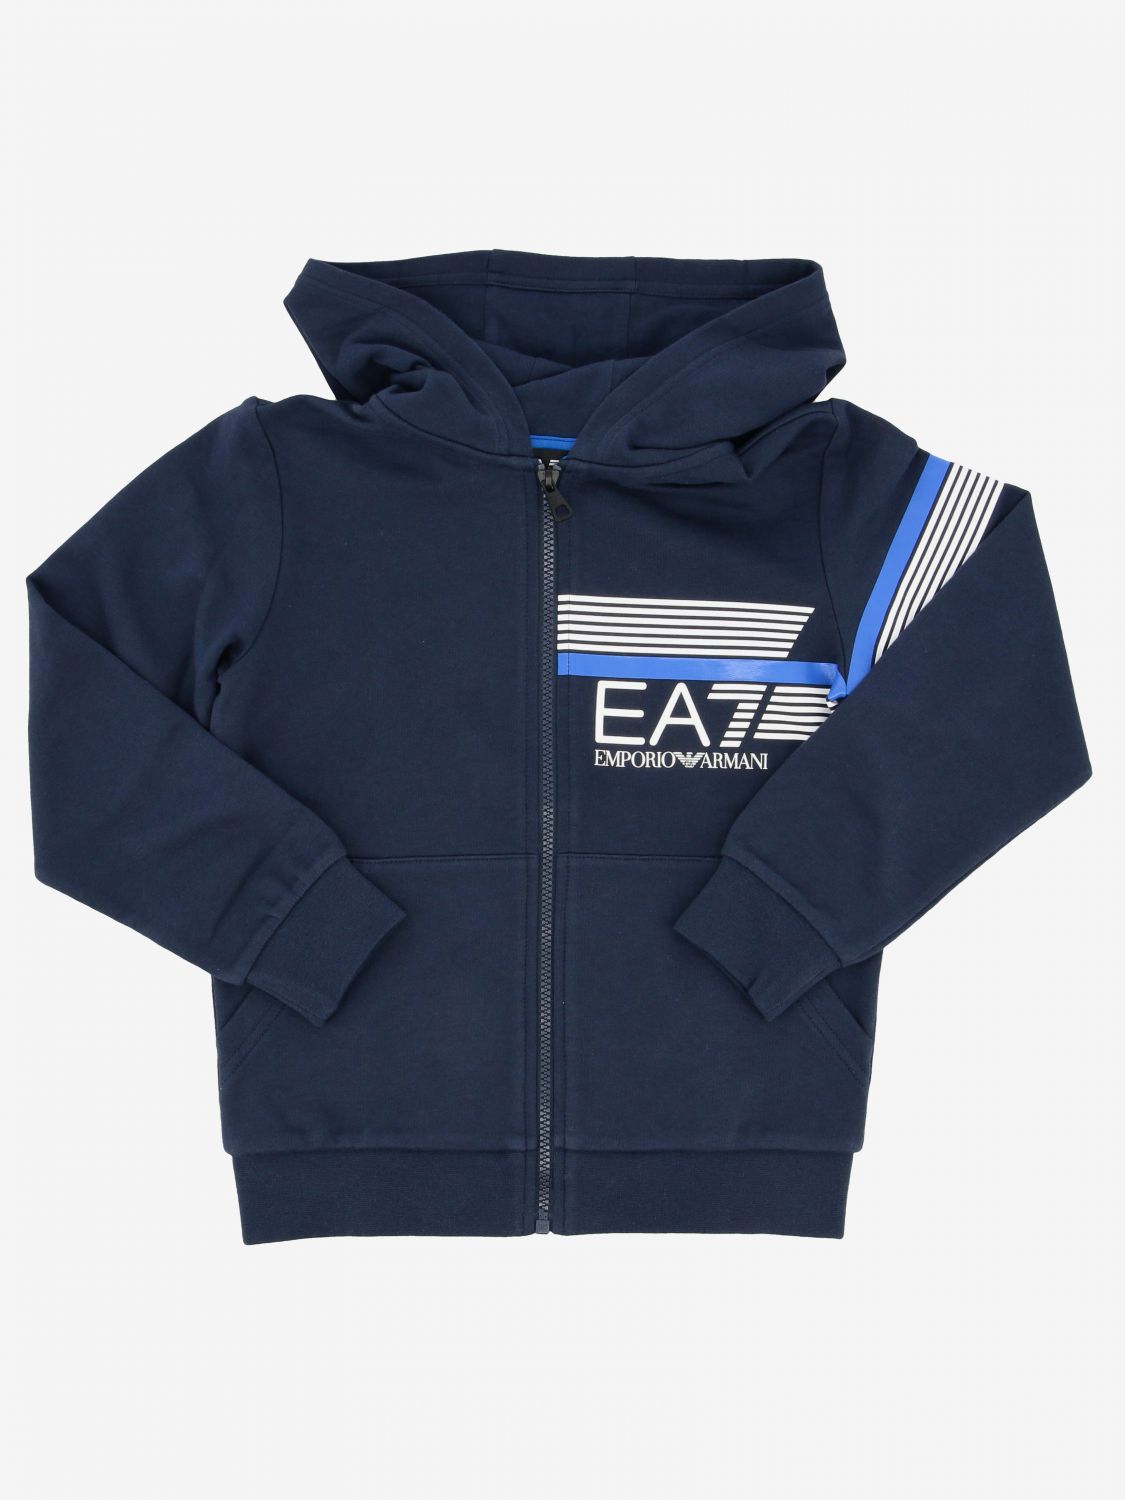 ea7 kids hoodie